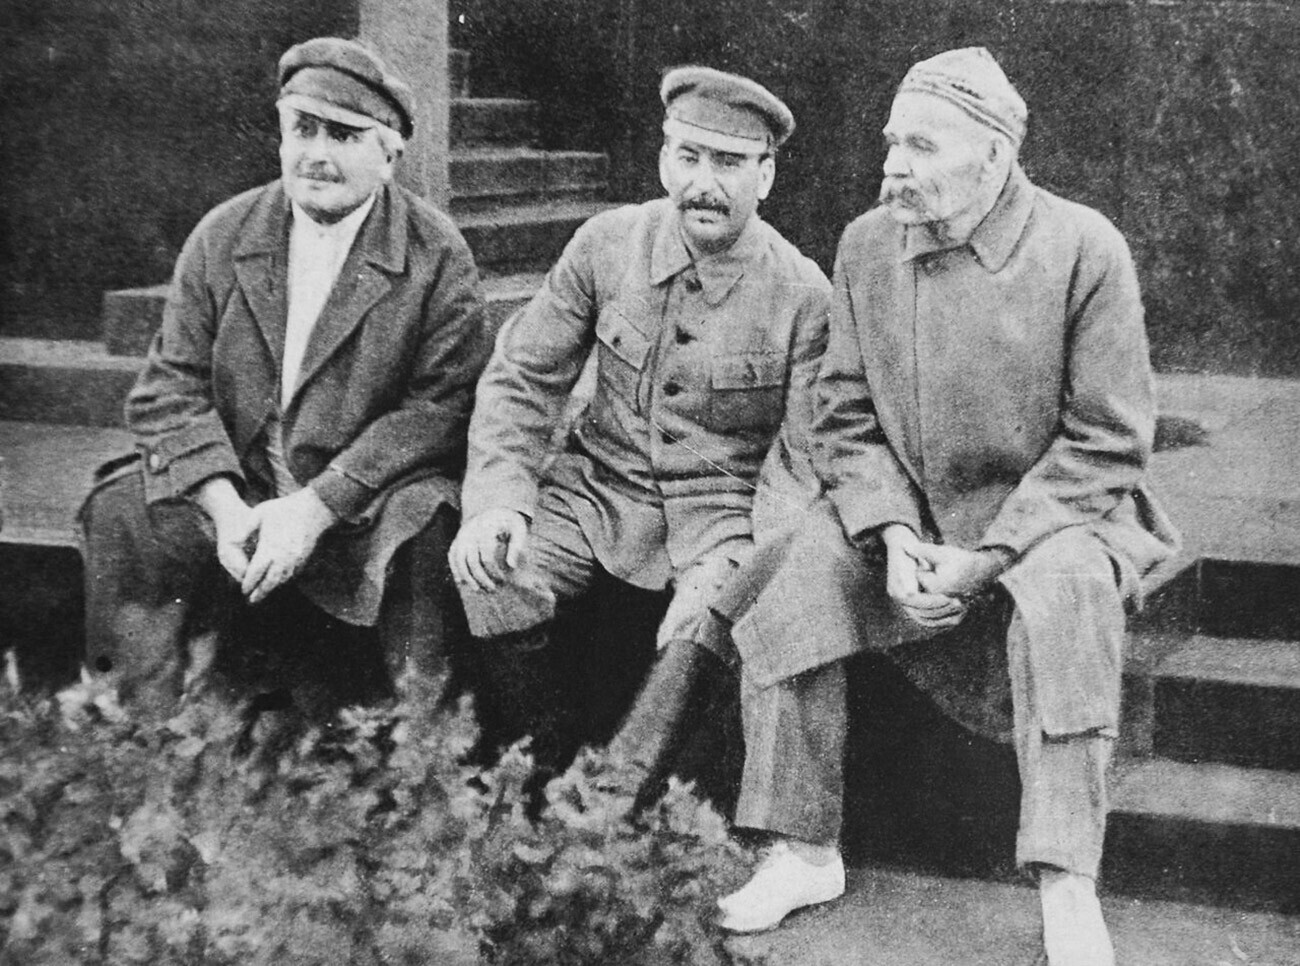 Авељ Енукиѕе, Сталин и Максим Горки
